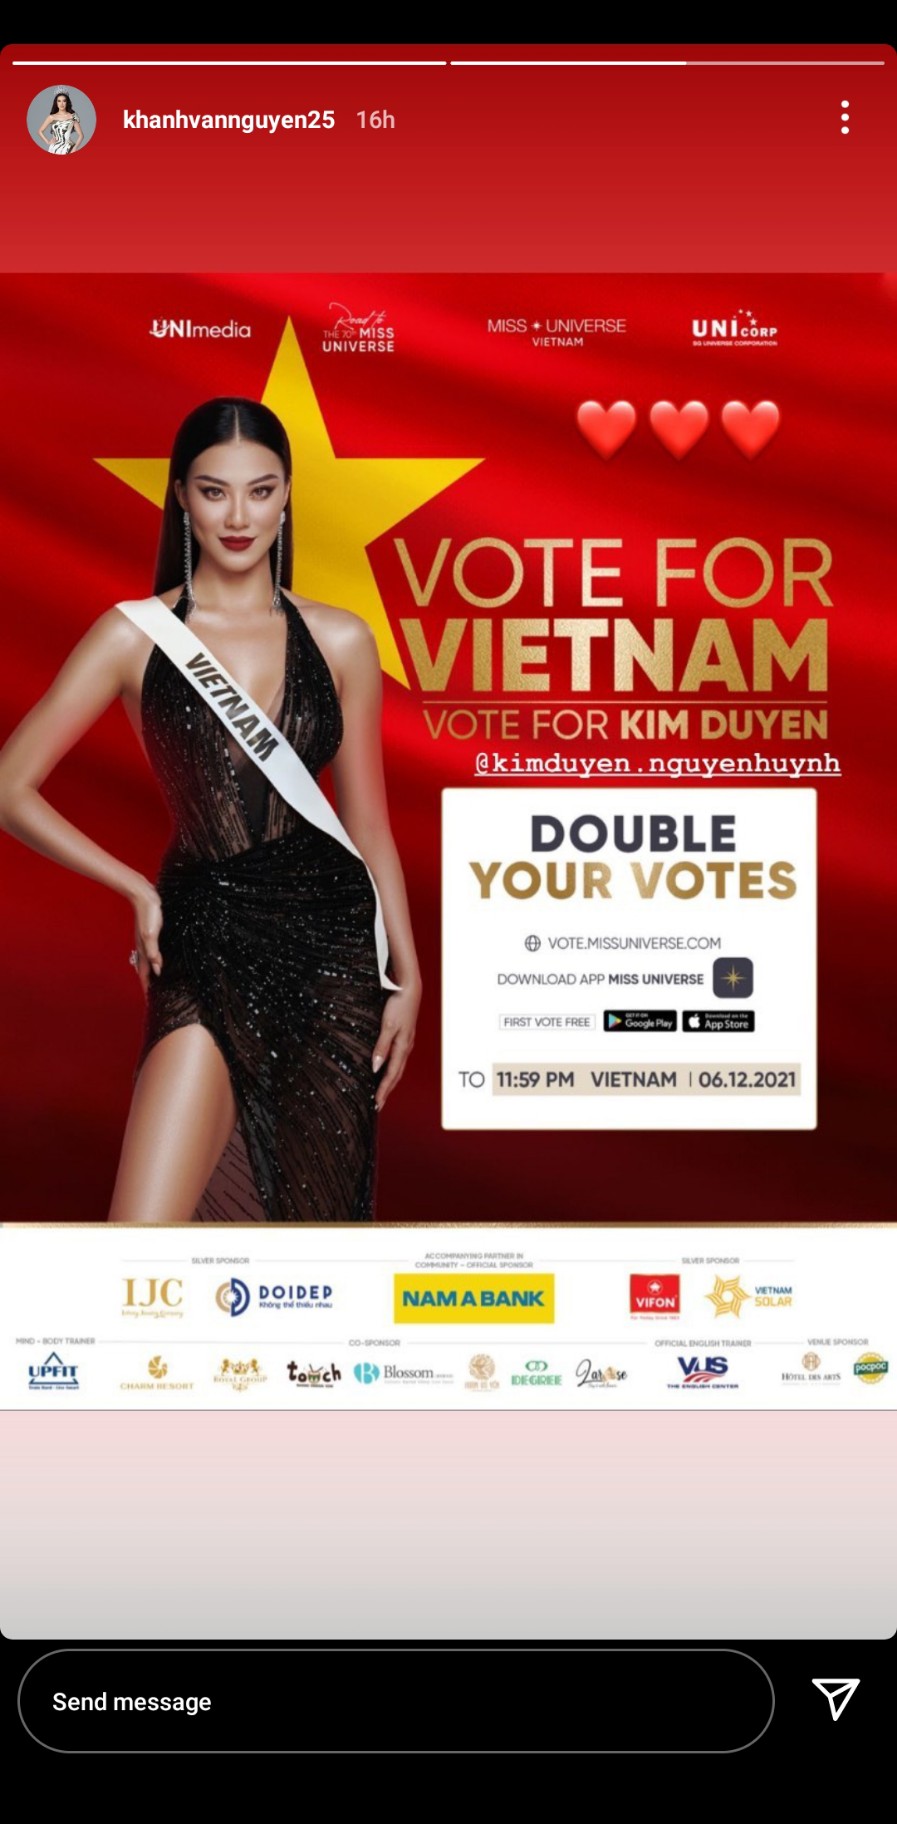 Miss Universe 2021 bất ngờ đổi luật, fan lo lắng Á hậu Kim Duyên gặp nhiều bất lợi - Ảnh 4